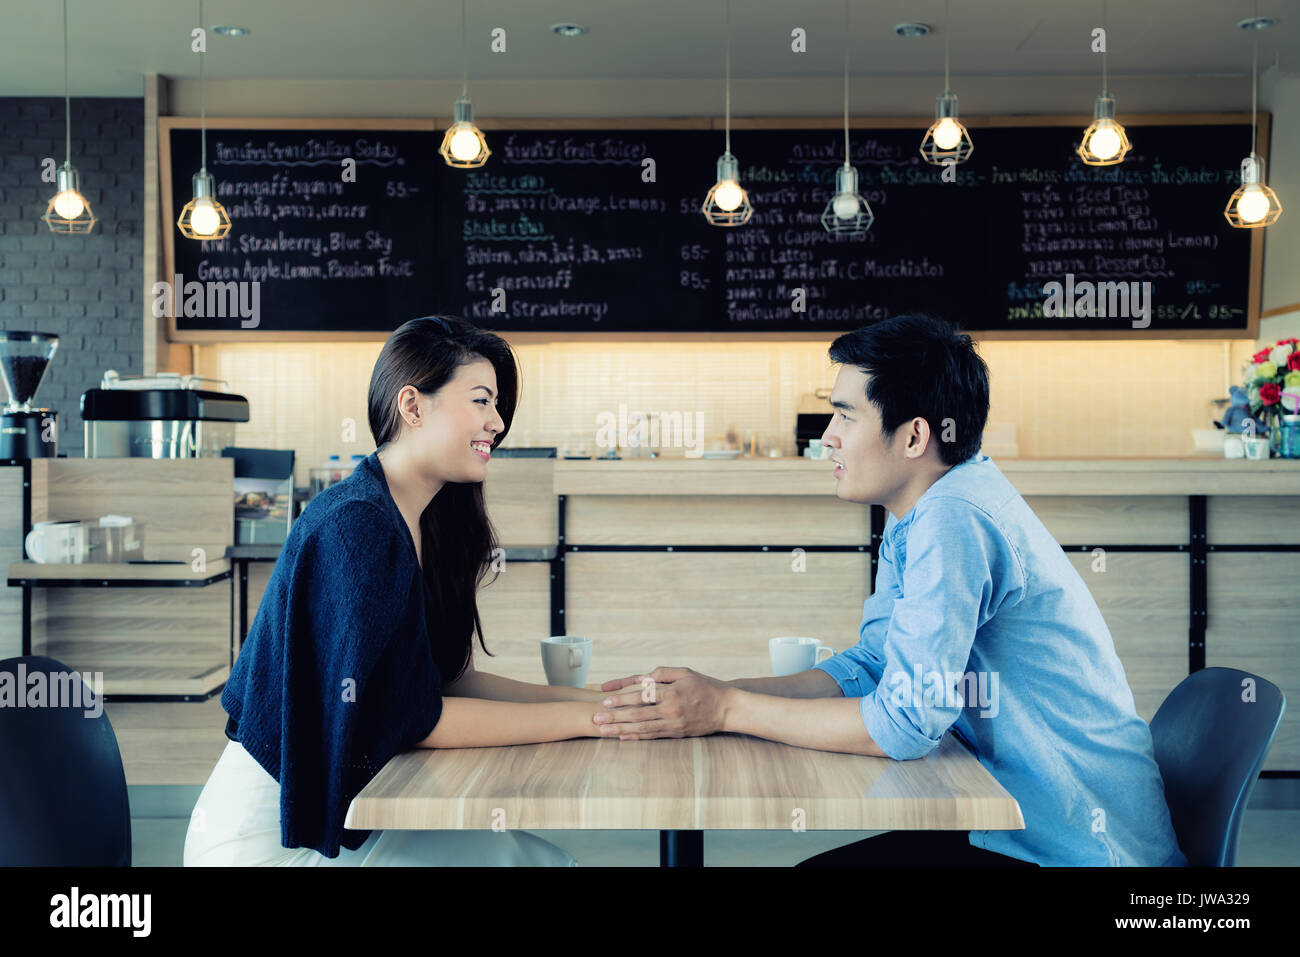 Partnersuche in einem Cafe. Schöne asiatische Liebhaber Paar sitzt in einem Café in Kaffee und Unterhaltung genießen. Liebe und Romantik. Stockfoto